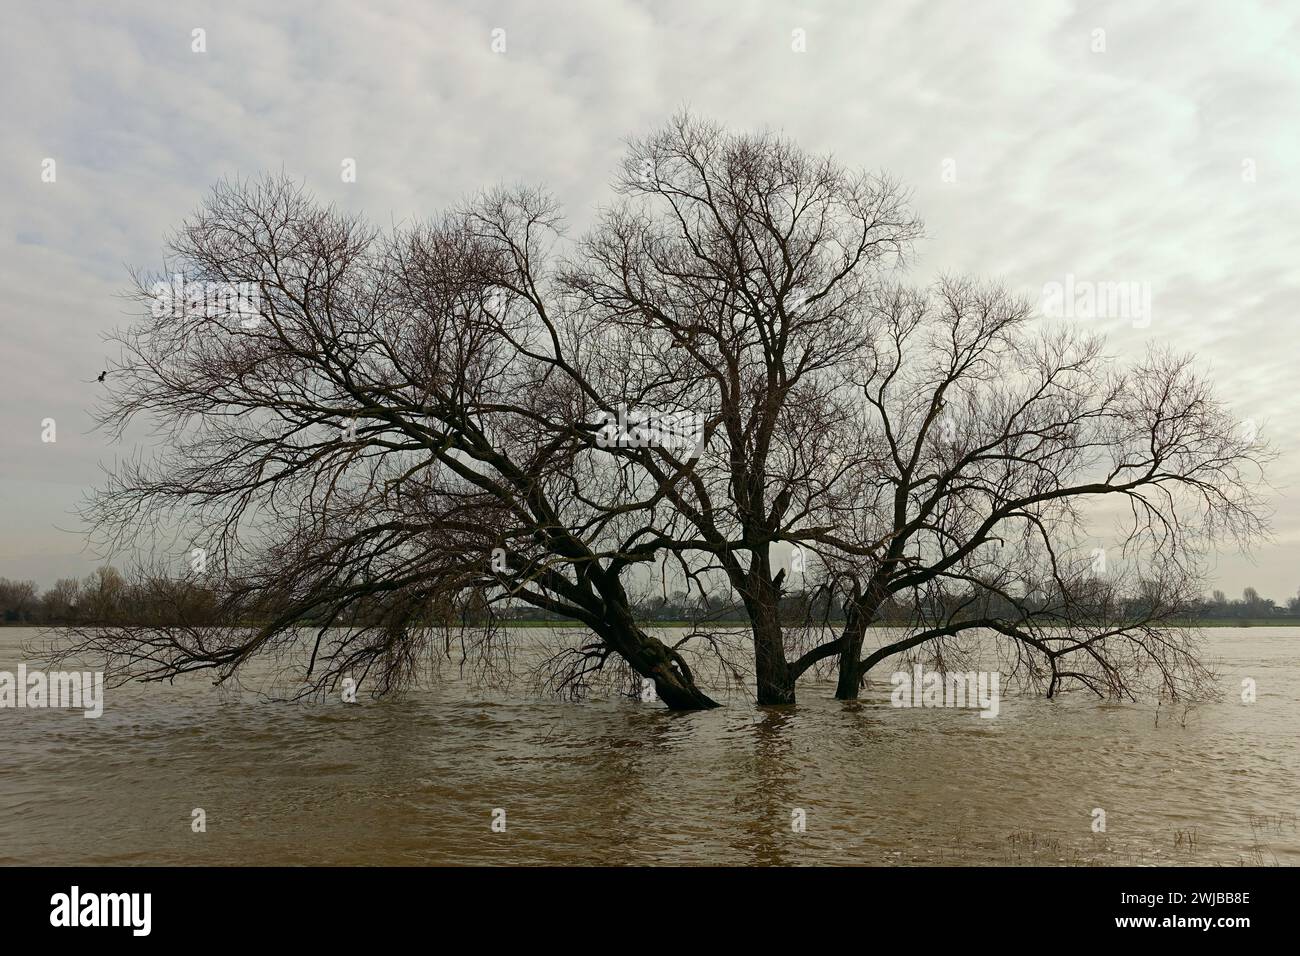 Acqua alta, alta inondazione sul fiume Reno, albero sommerso circondato da acque alluvionali, zona del basso Reno vicino a Colonia e Düsseldorf. Foto Stock